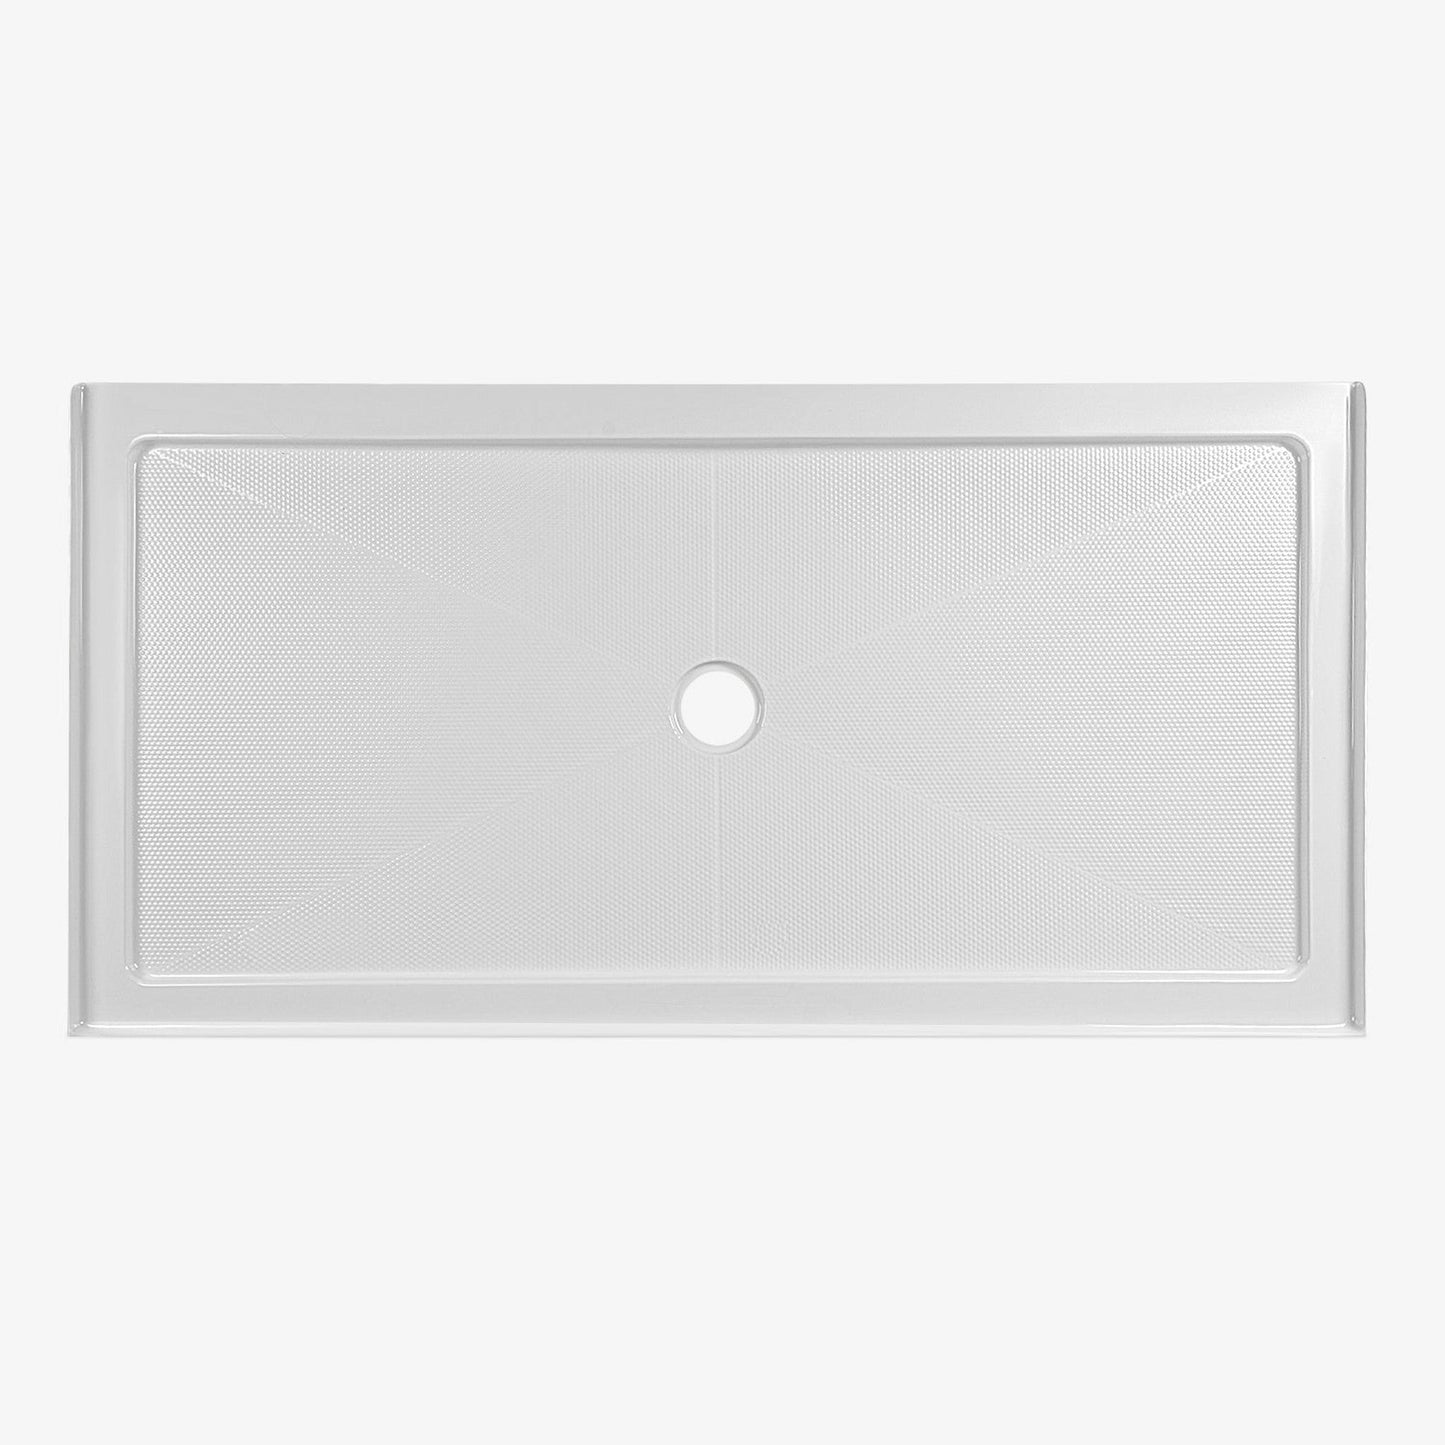 DeerValley DV-1SB0106 60" x 30" Rectangular White Non-slip Design Shower Base